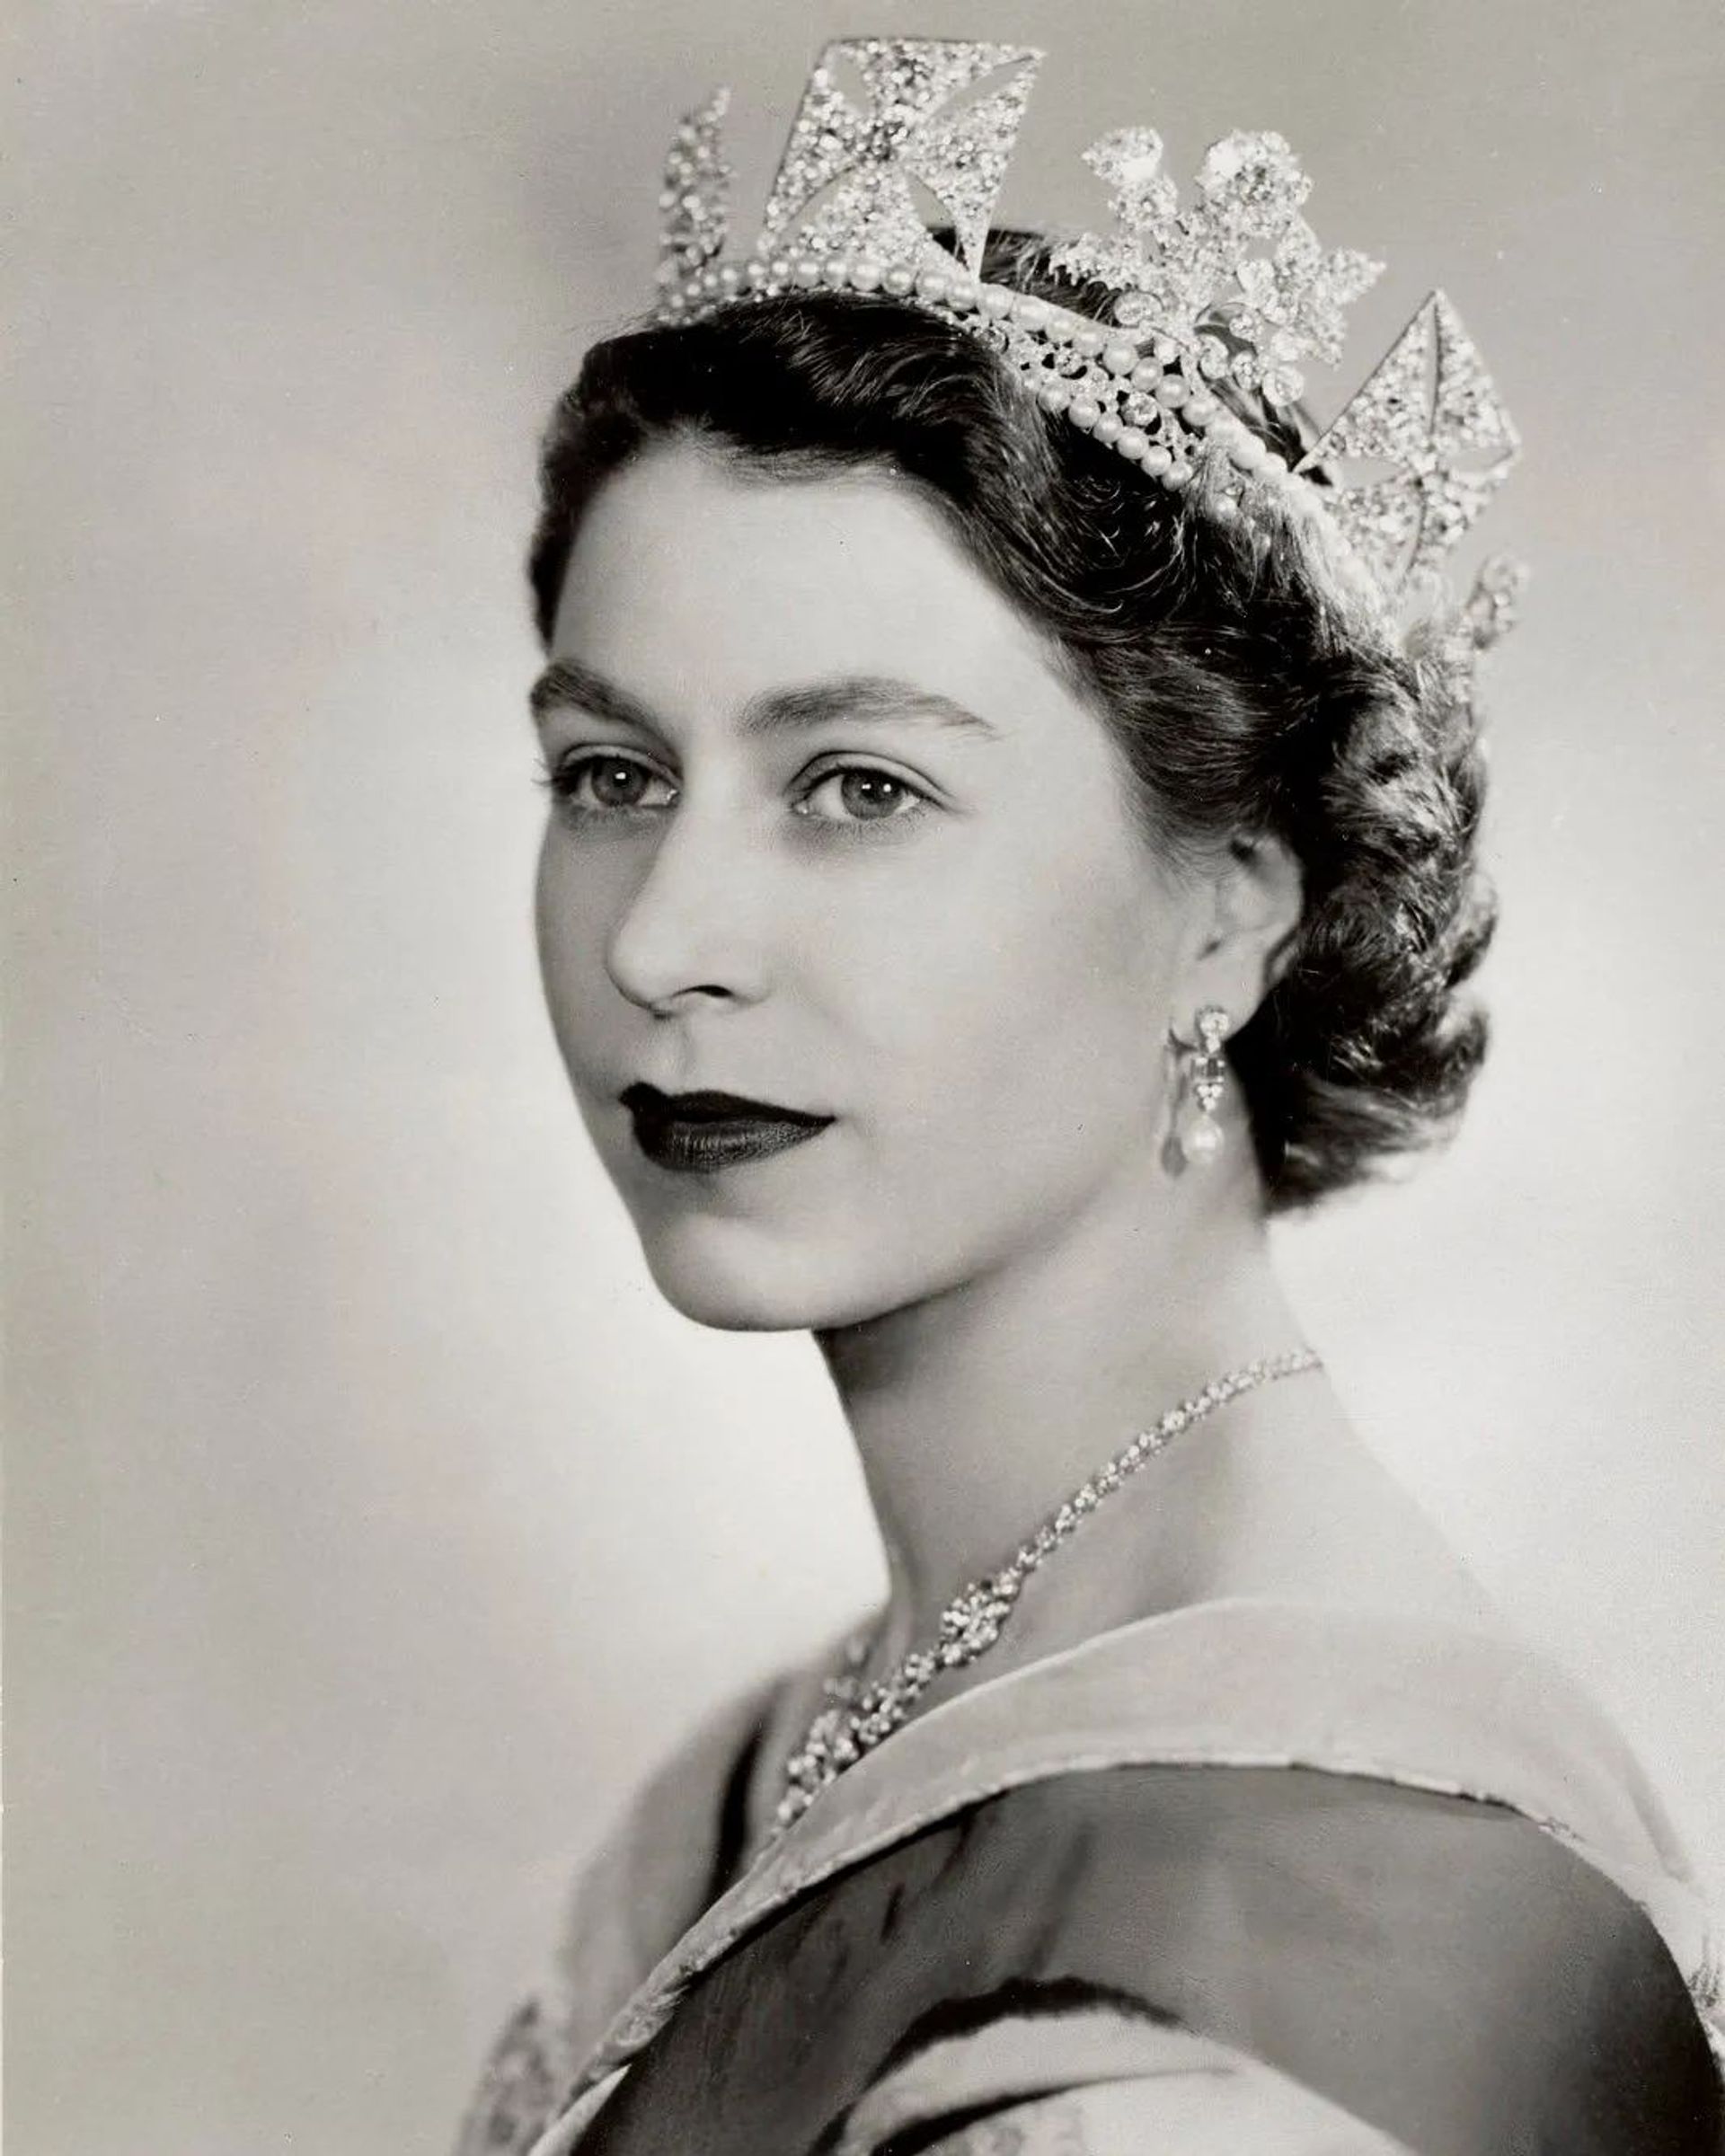 Portret_koningin_Elizabeth_1952.jpeg